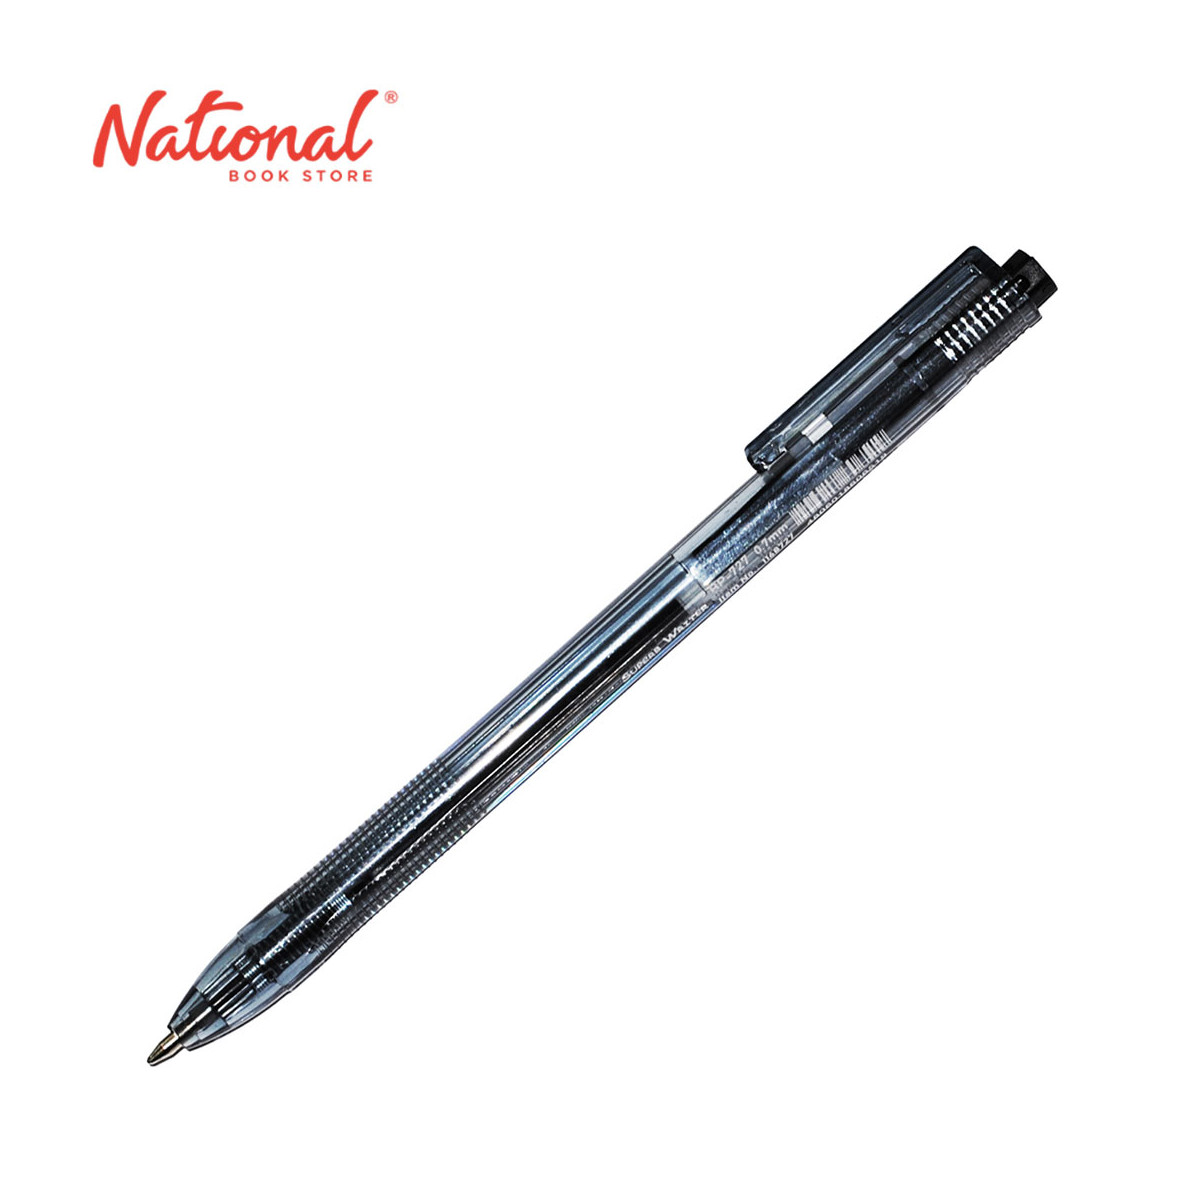 Superbwriter Ballpoint Pen Retractable Black 0.7mm BP-727 - Writing Supplies - School & Office Supplies